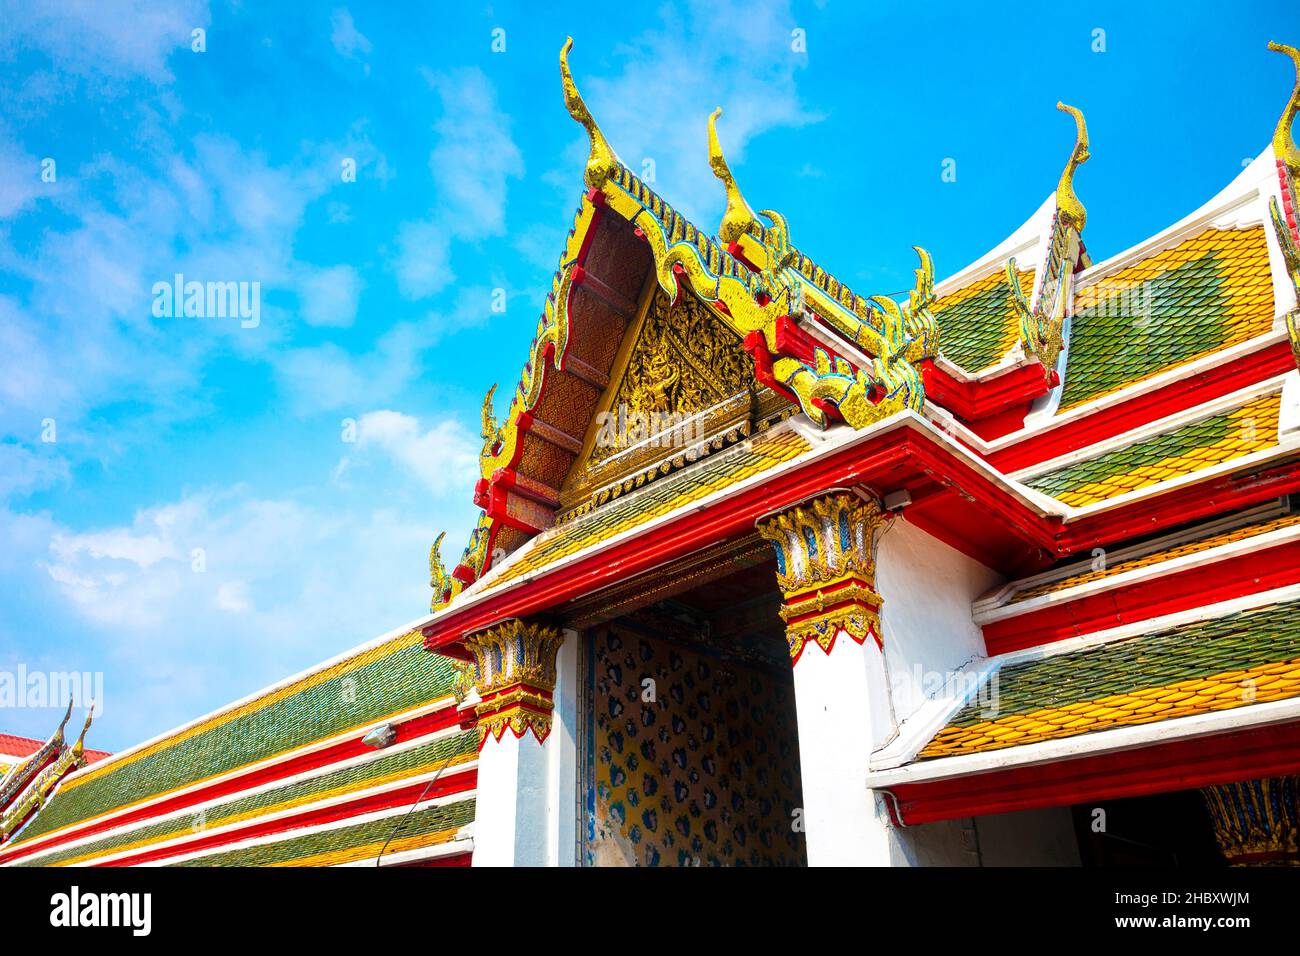 Dettaglio di colorato timpano dorato e tetto a Wat Arun (Tempio dell'alba), Bangkok, Thailandia Foto Stock